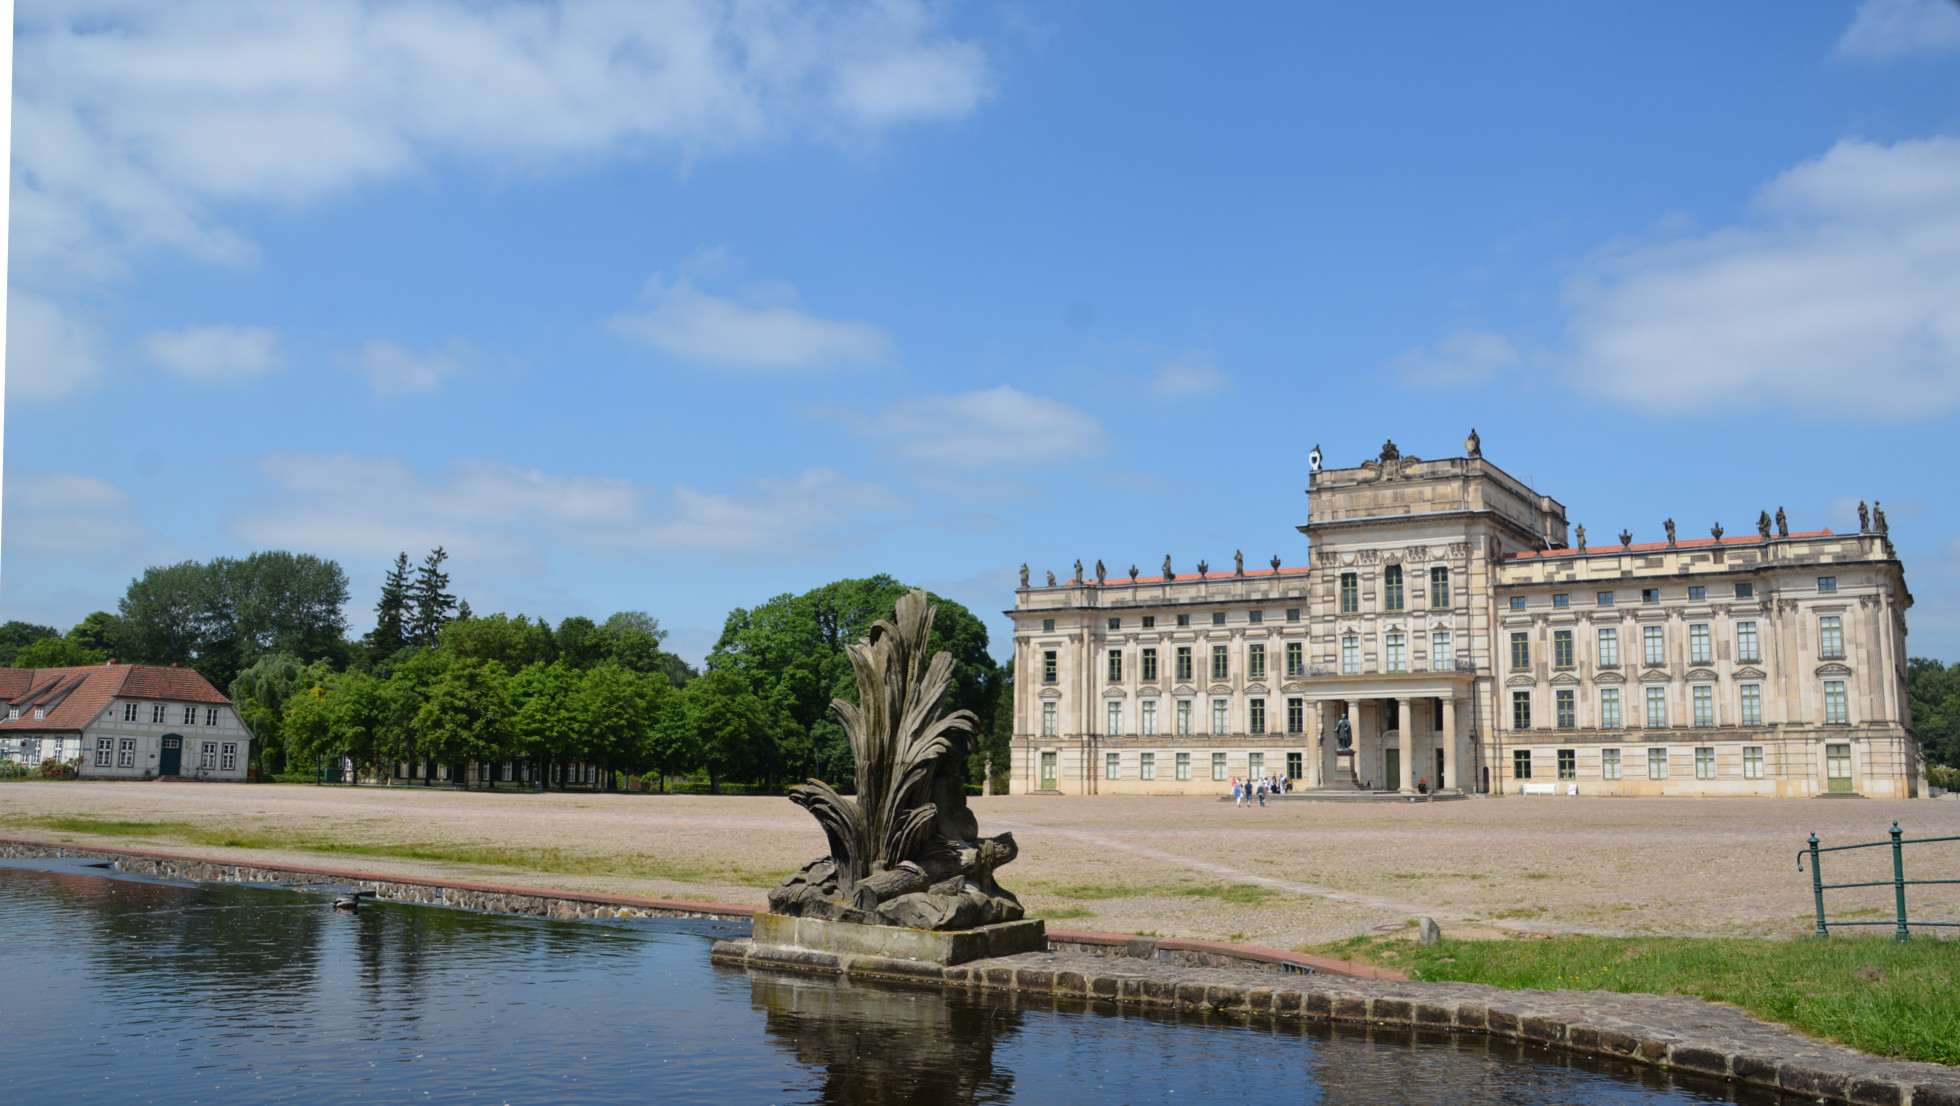 Das Schloss Ludwigslust von der Stadtseite mit dem repräsentativen Schlossvorplatz